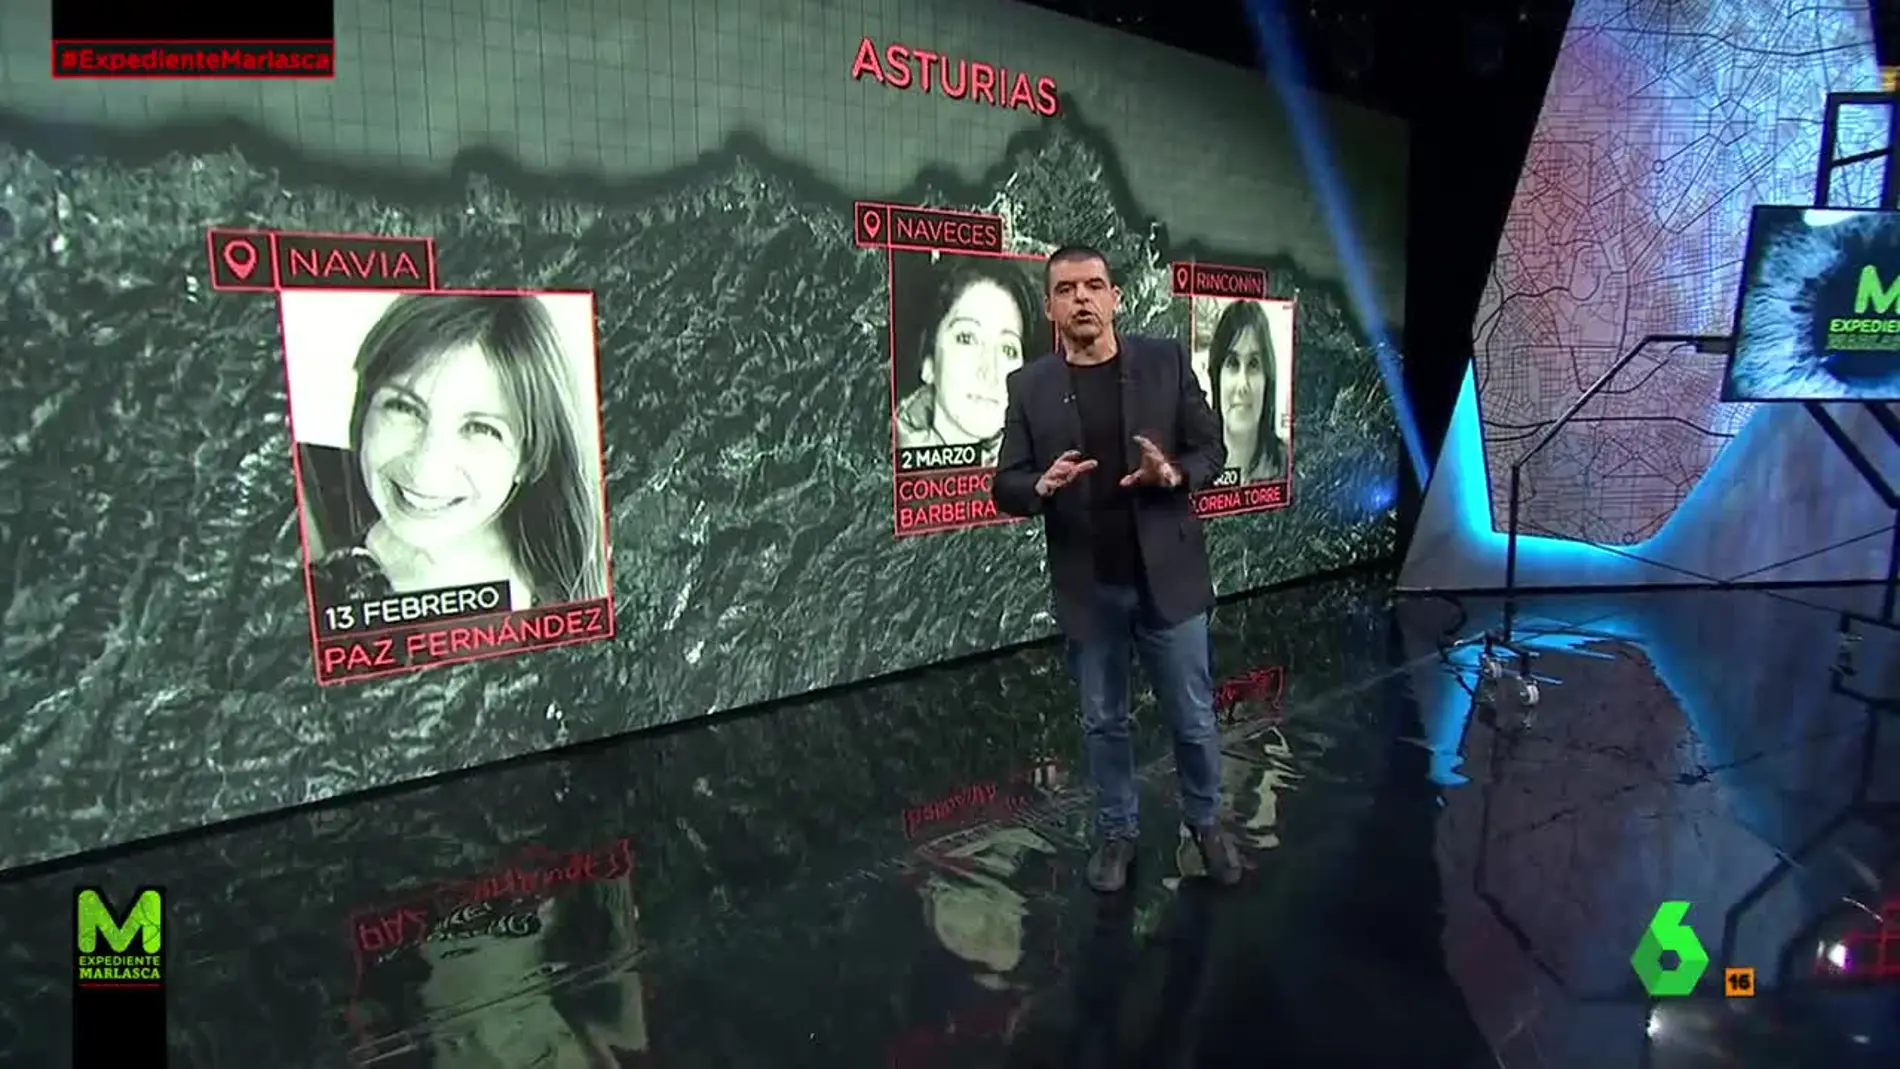 Mujeres desaparecidas en Asturias